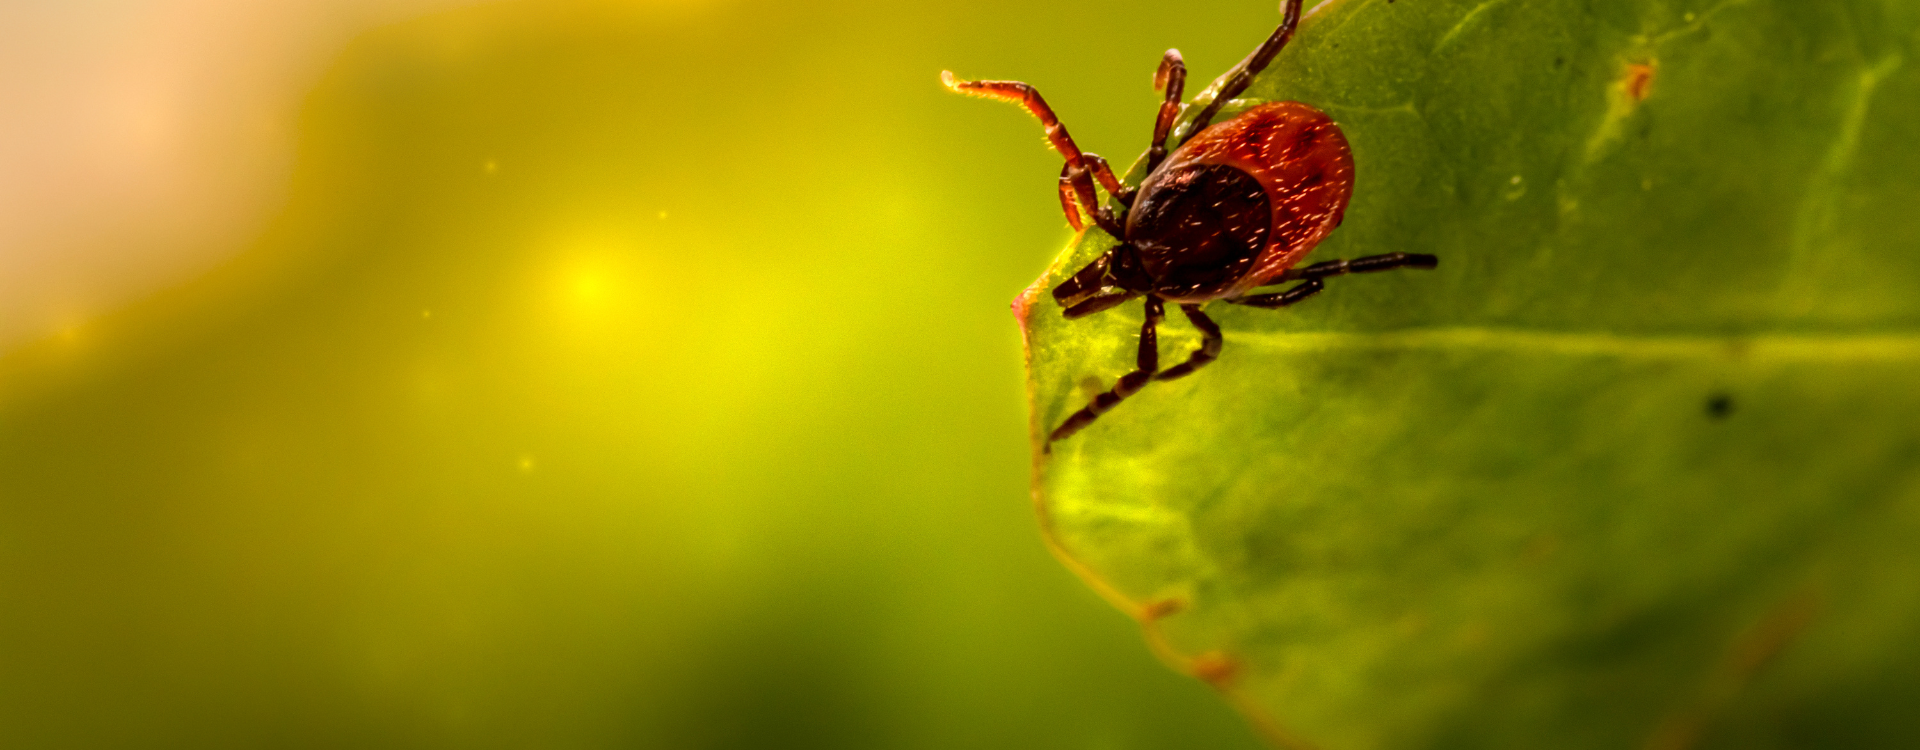 Kick The Tick - Potrójna ochrona przed kleszczami, komarami i meszkami